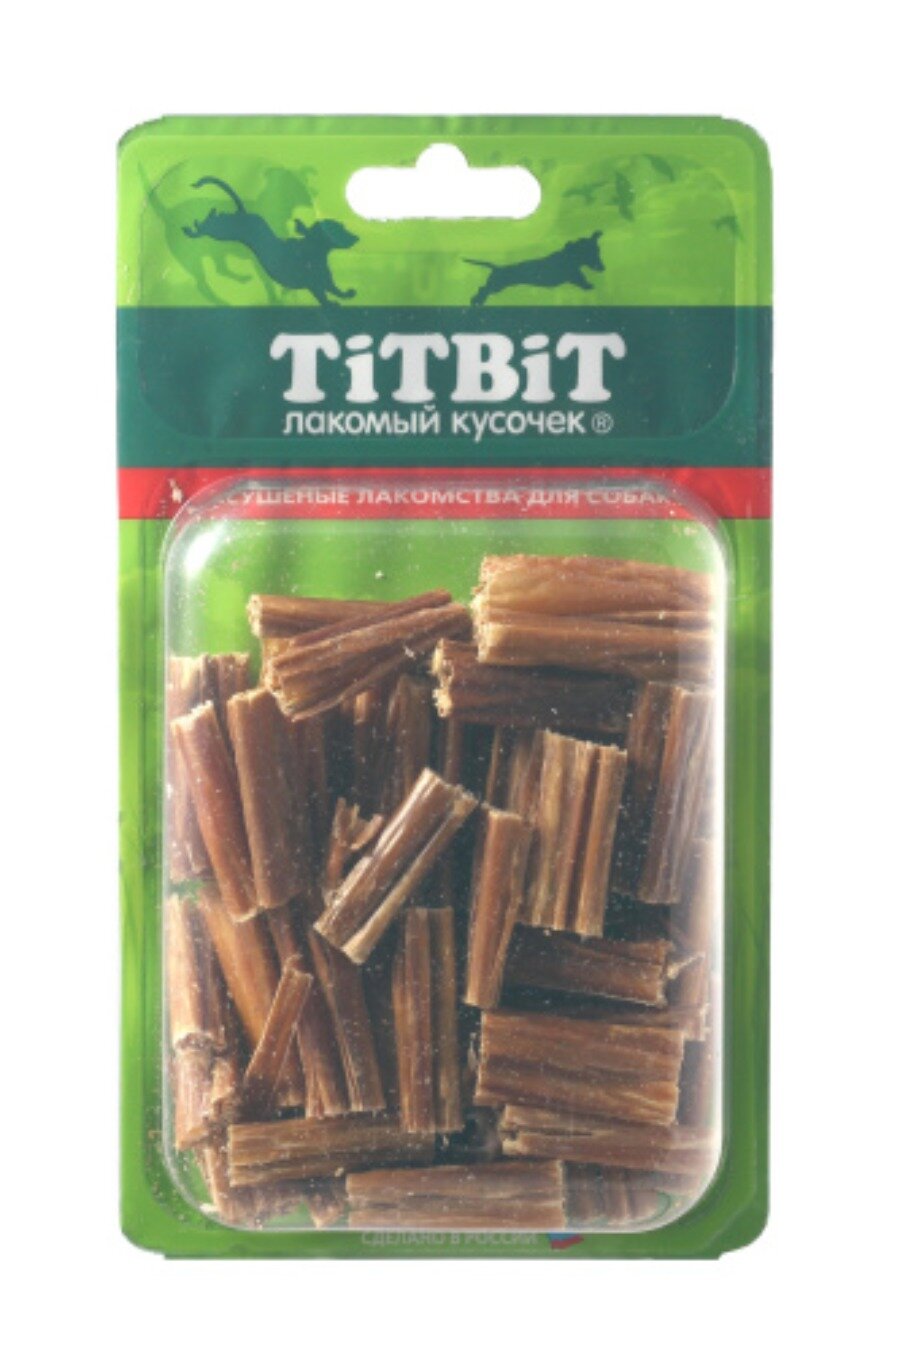 Лакомство для собак Titbit Набор для дрессуры №3 из кишок говяжьихБ2-M 0,04 кг - фото №6